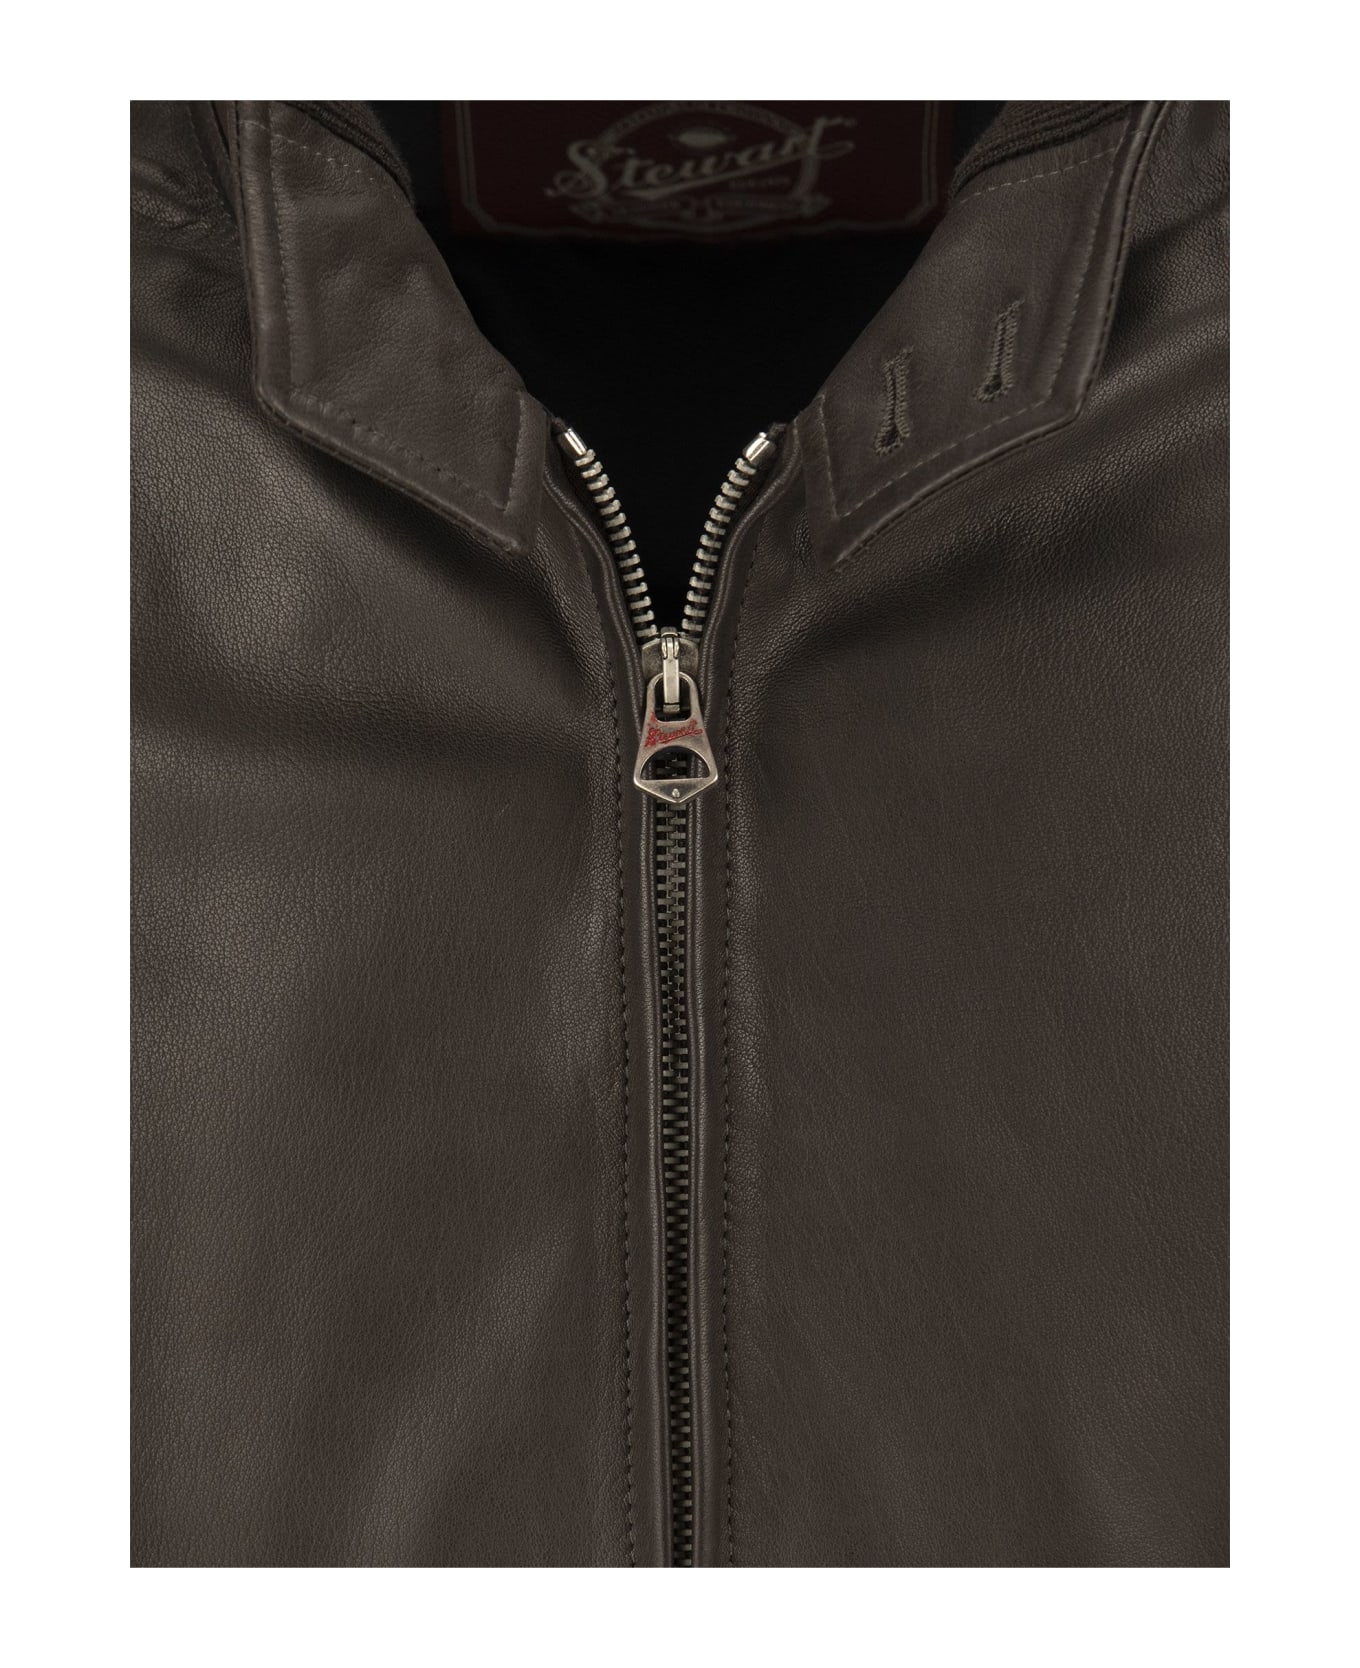 Stewart Tenerife Leather Jacket - Dark Brown